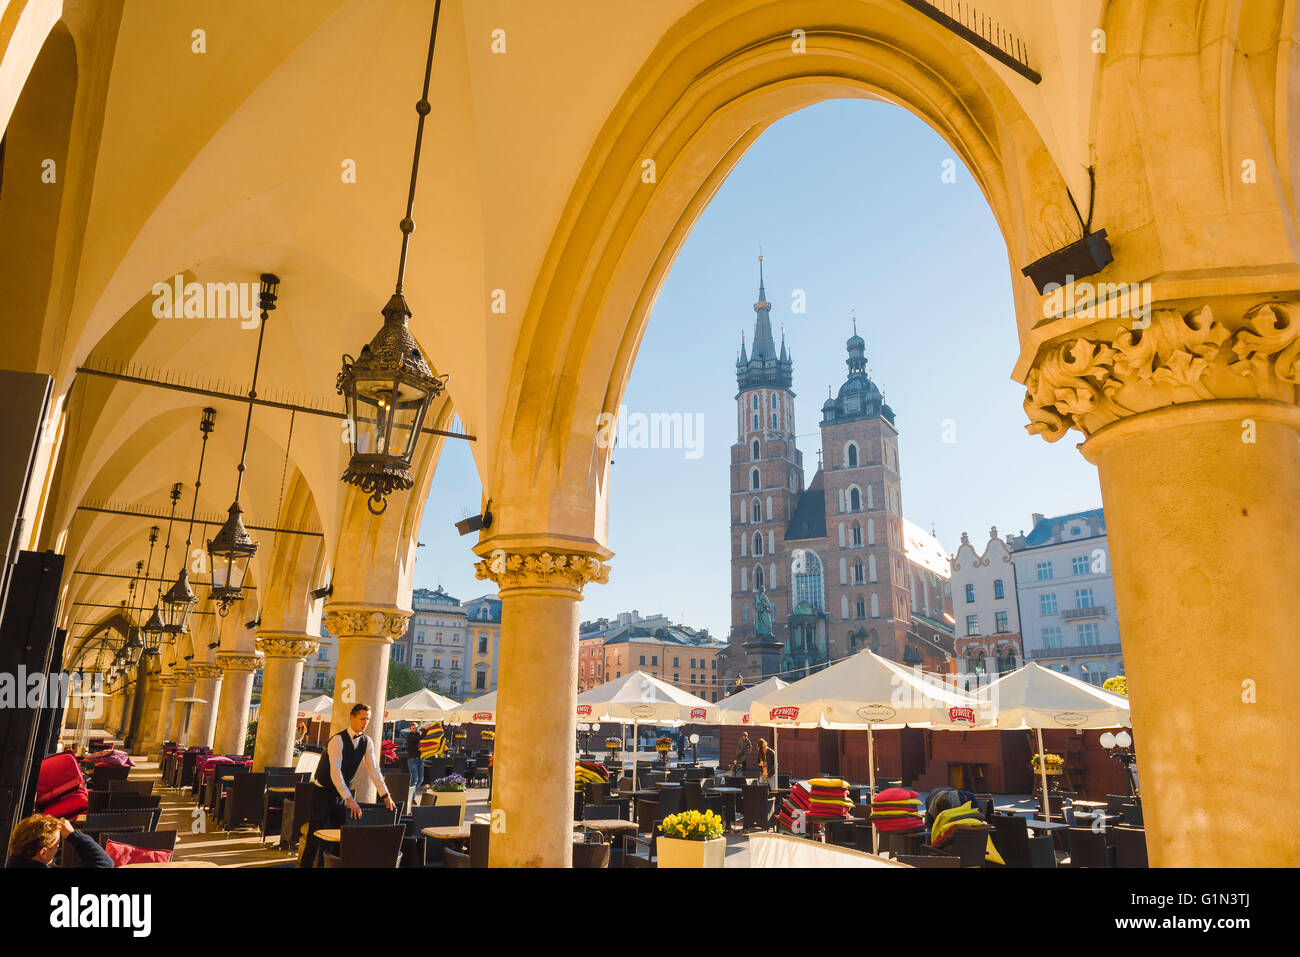 Place du marché de Cracovie, vue de la colonnade de l'ère de la renaissance Cloth Hall vers l'église de St Mary à la place du marché à Cracovie, Pologne. Banque D'Images